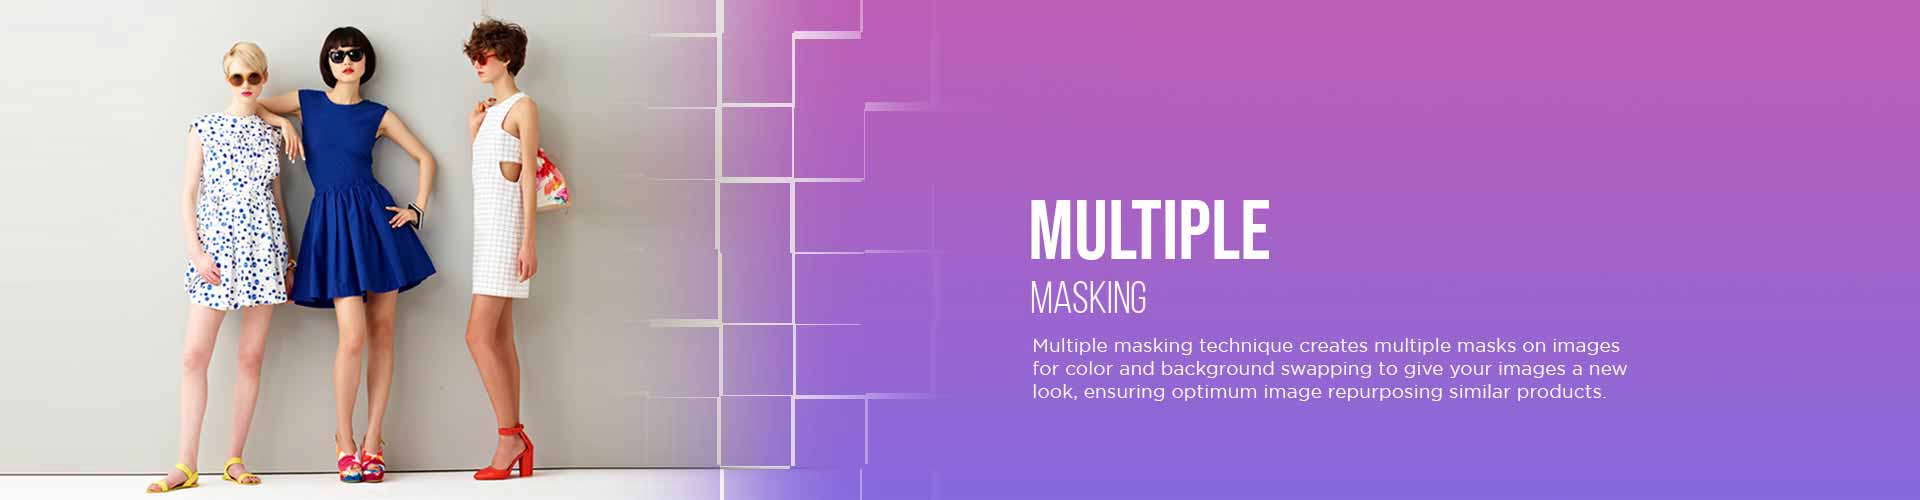 Multiple Masking